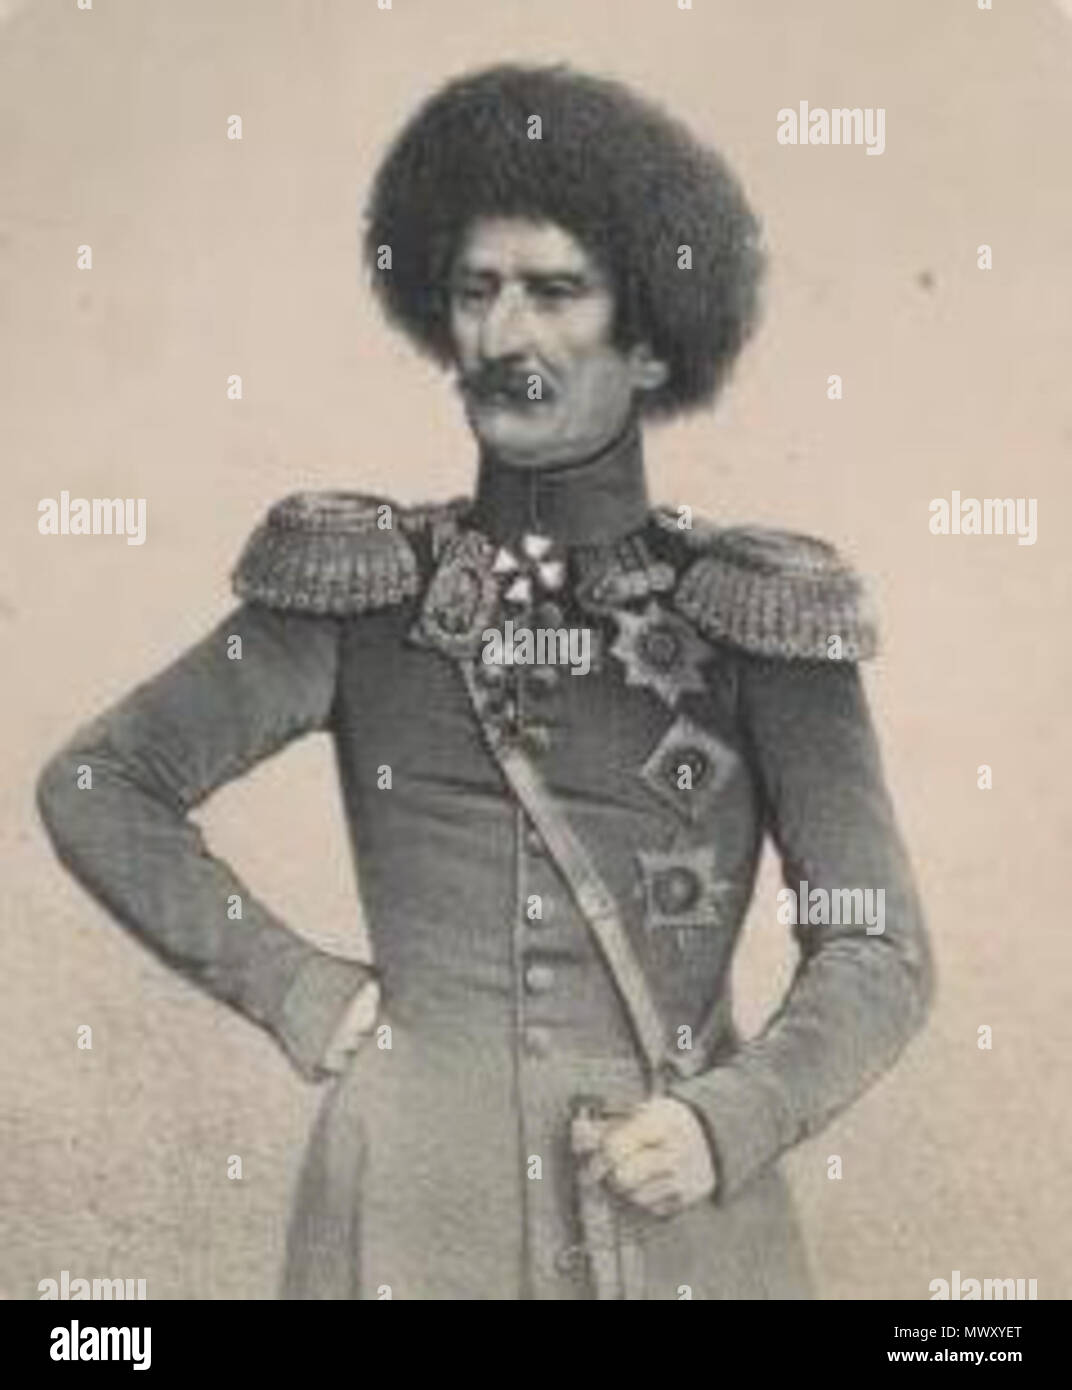 . General-Leitenant kniaz' V. O. Bebutov. published 1851-1862. Timm, Vasilii Fedorovich, 1820-1895 -- Artist. 624 V. O. Bebutov (B) Stock Photo